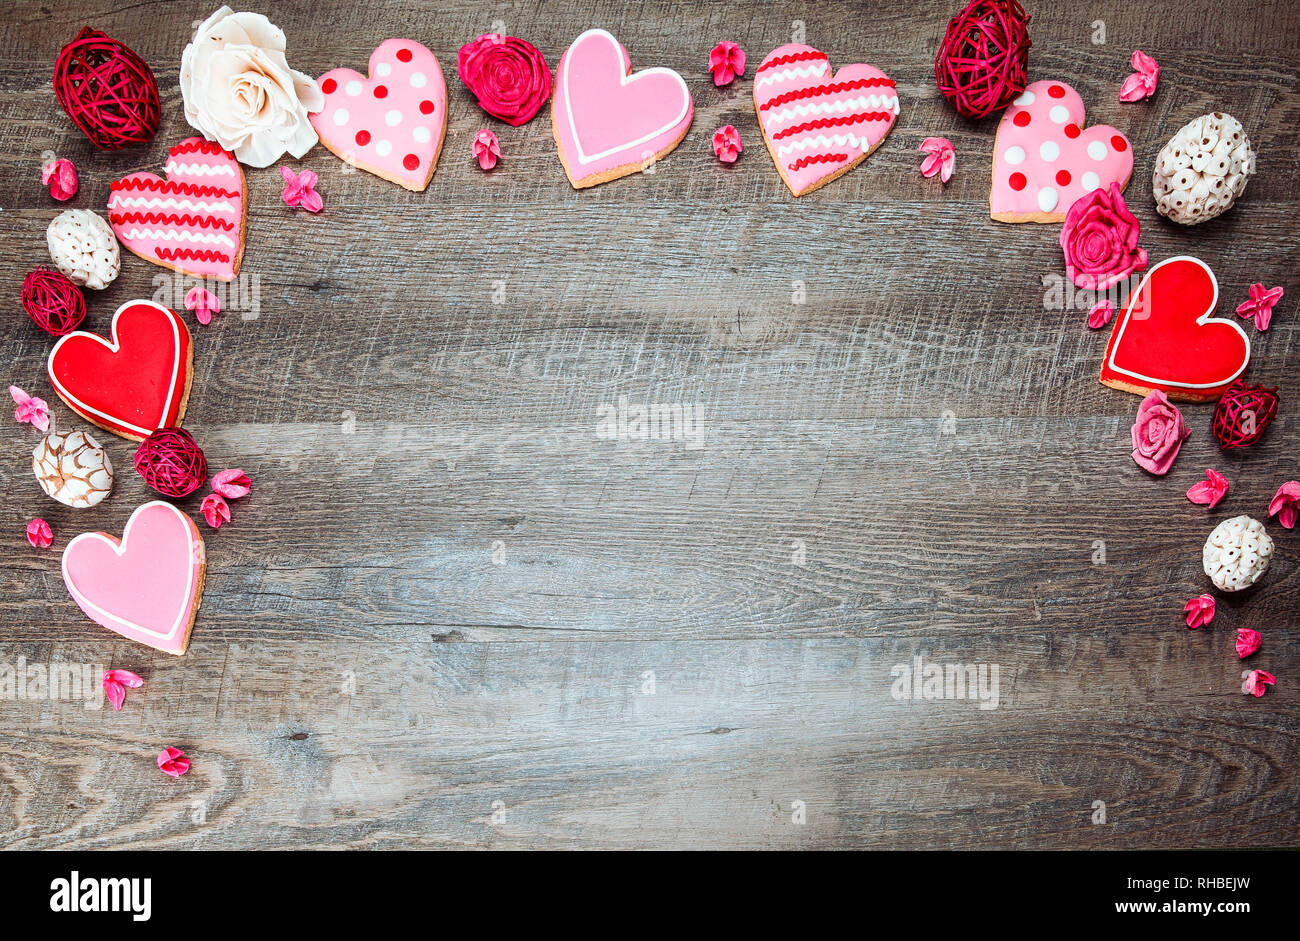 Les cookies en forme de cœur sur un fond de bois rustique, d'une Saint Valentin. Valentines Day background Banque D'Images